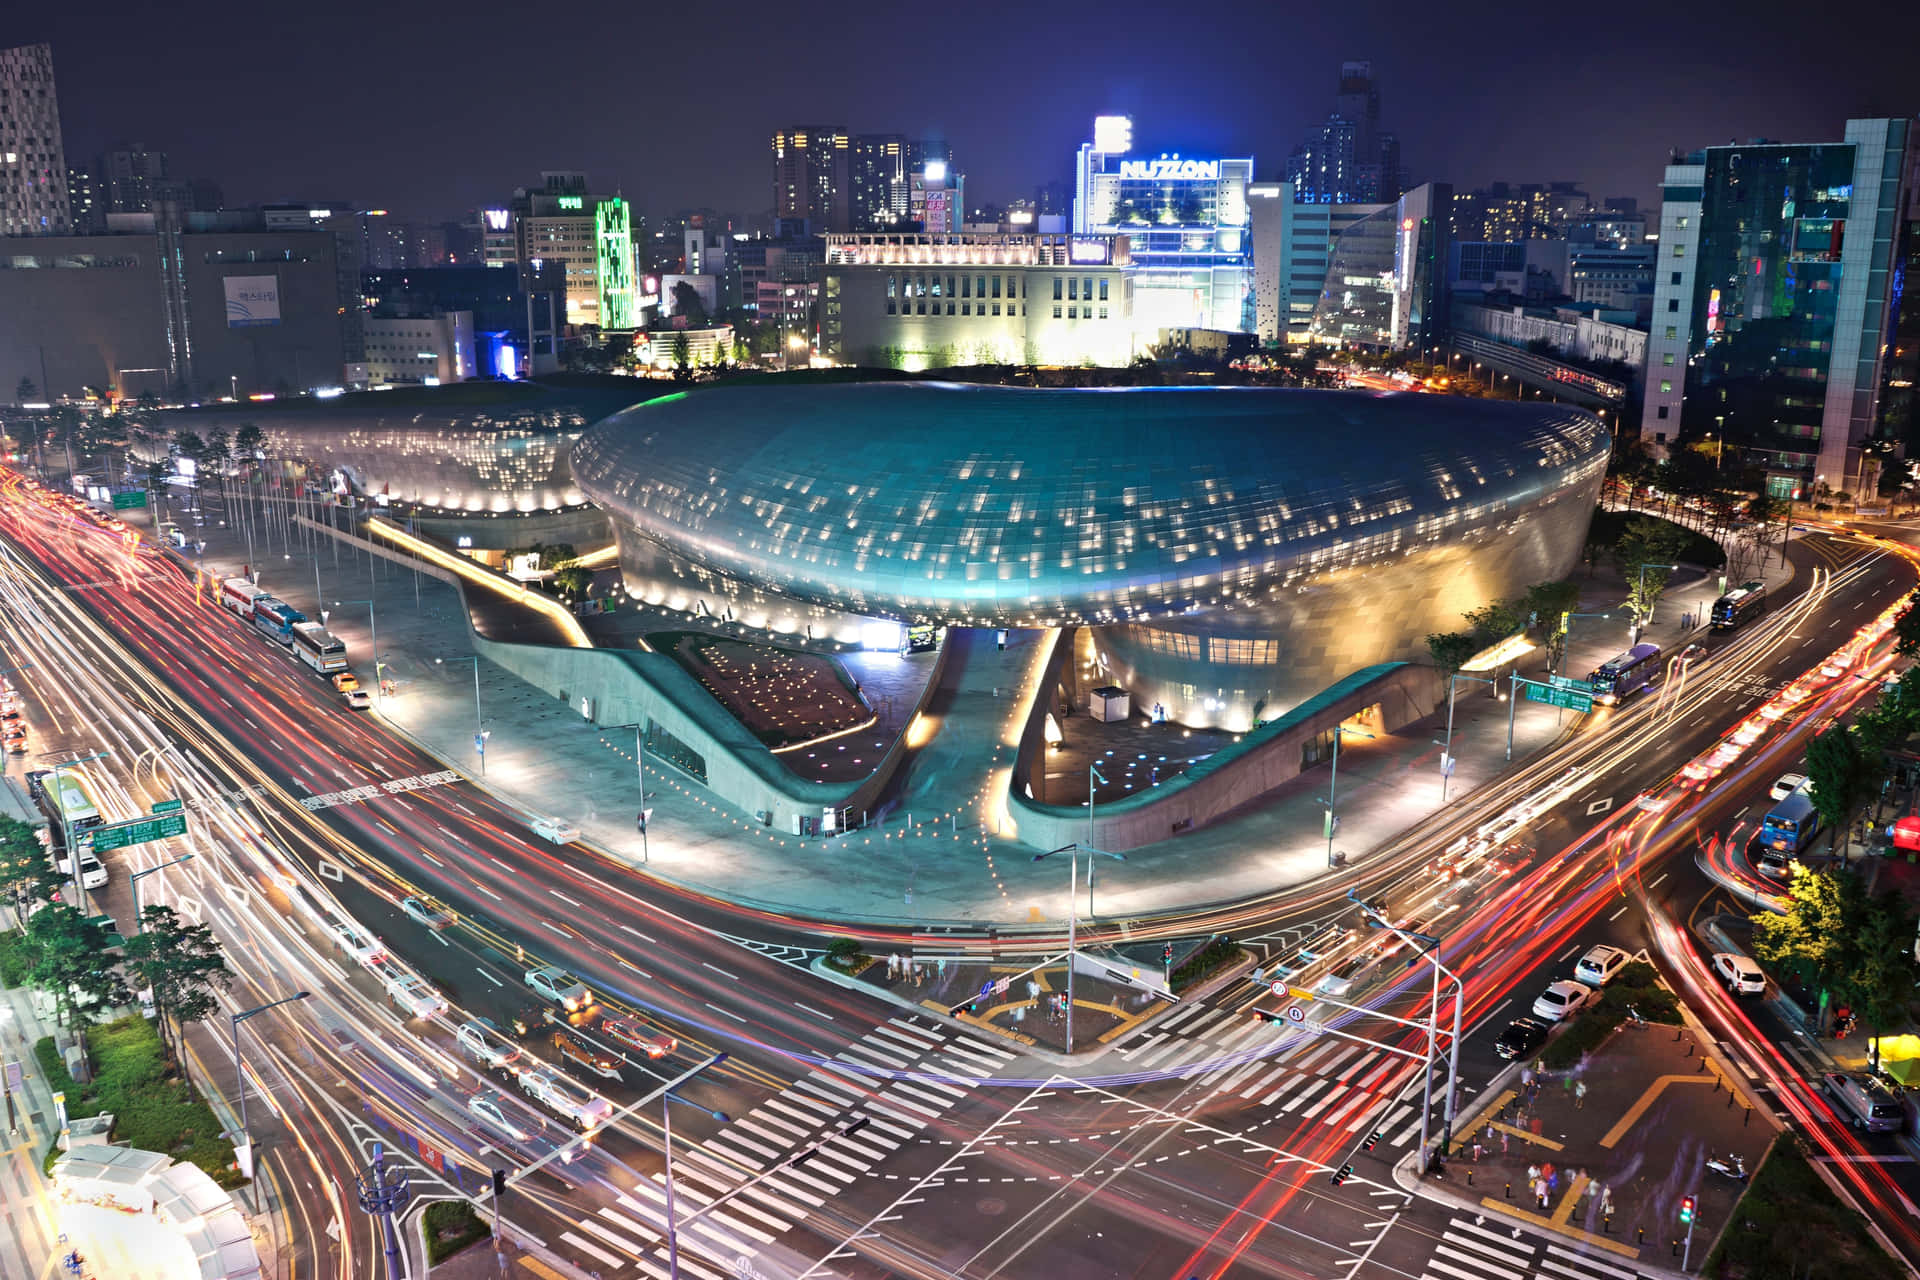 "The skyline of Seoul, the capital of South Korea."